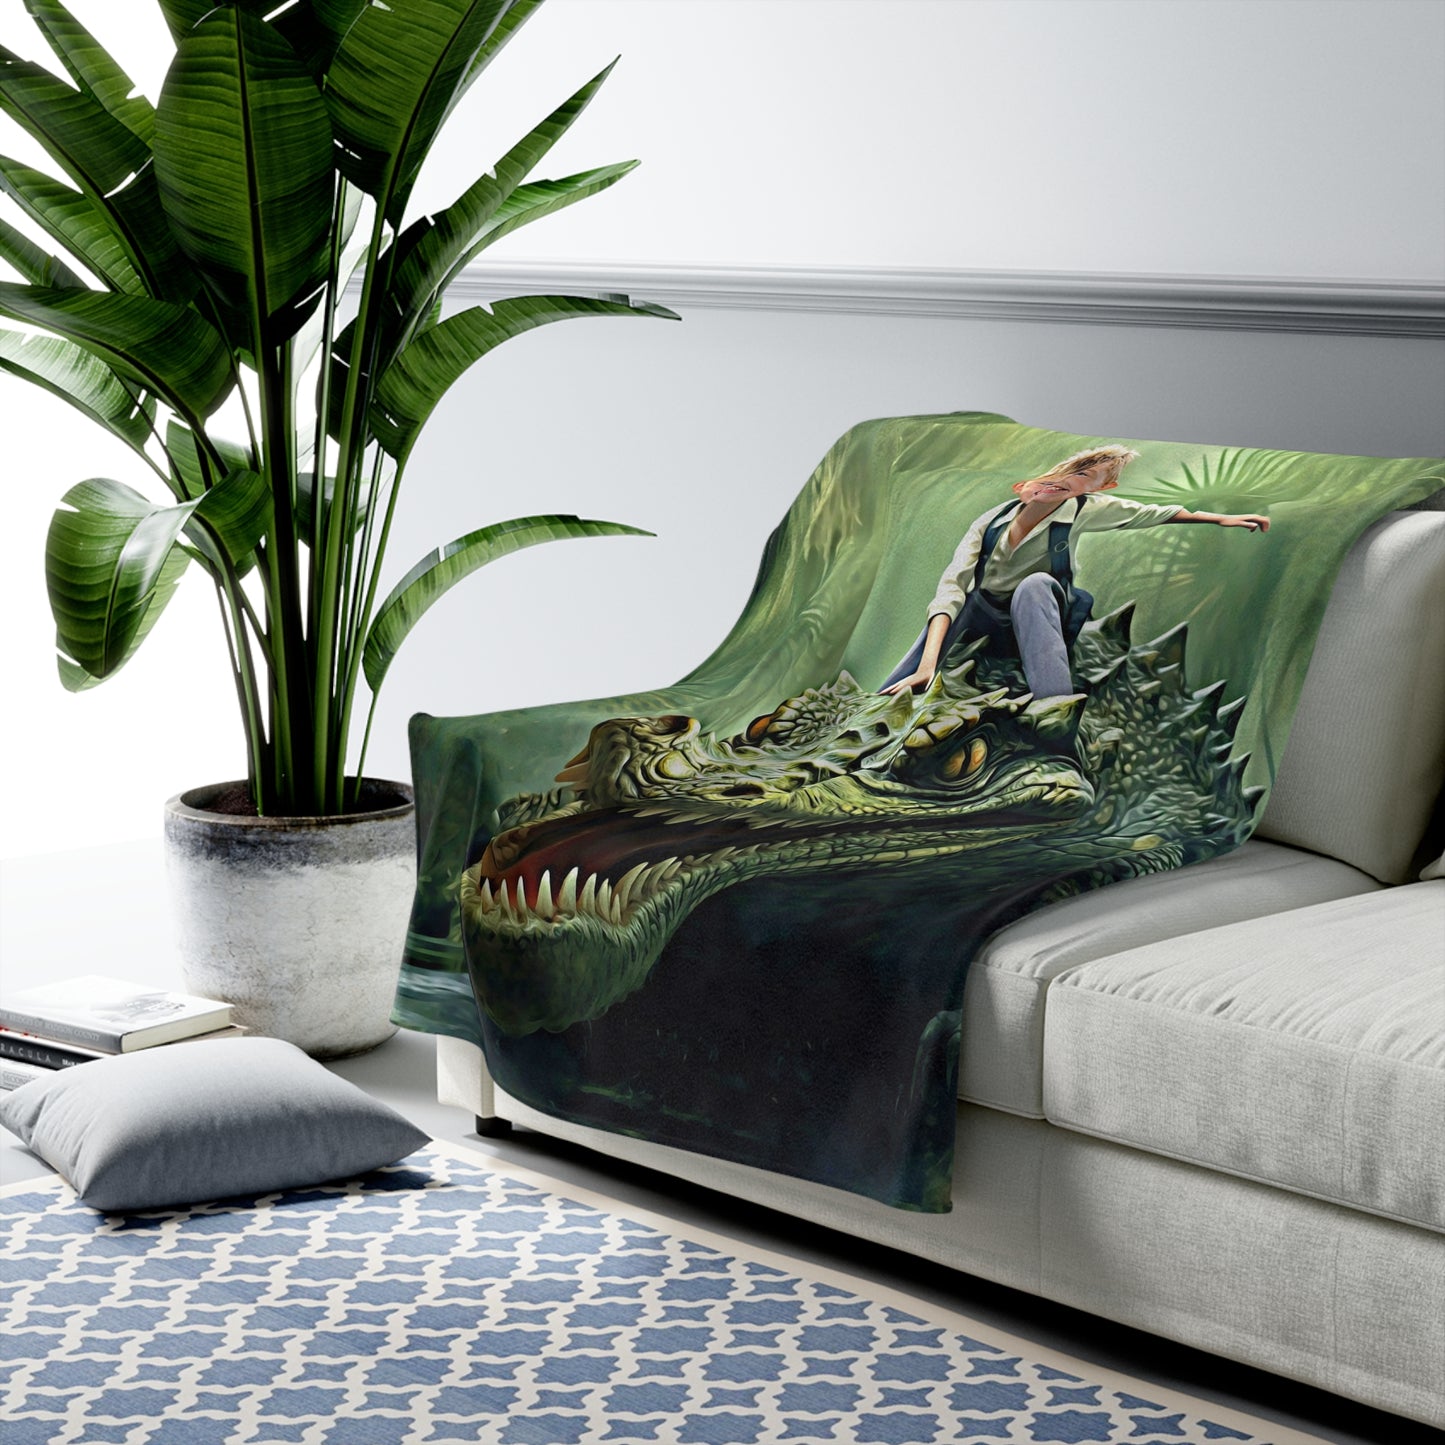 The Alligator Rider Blanket